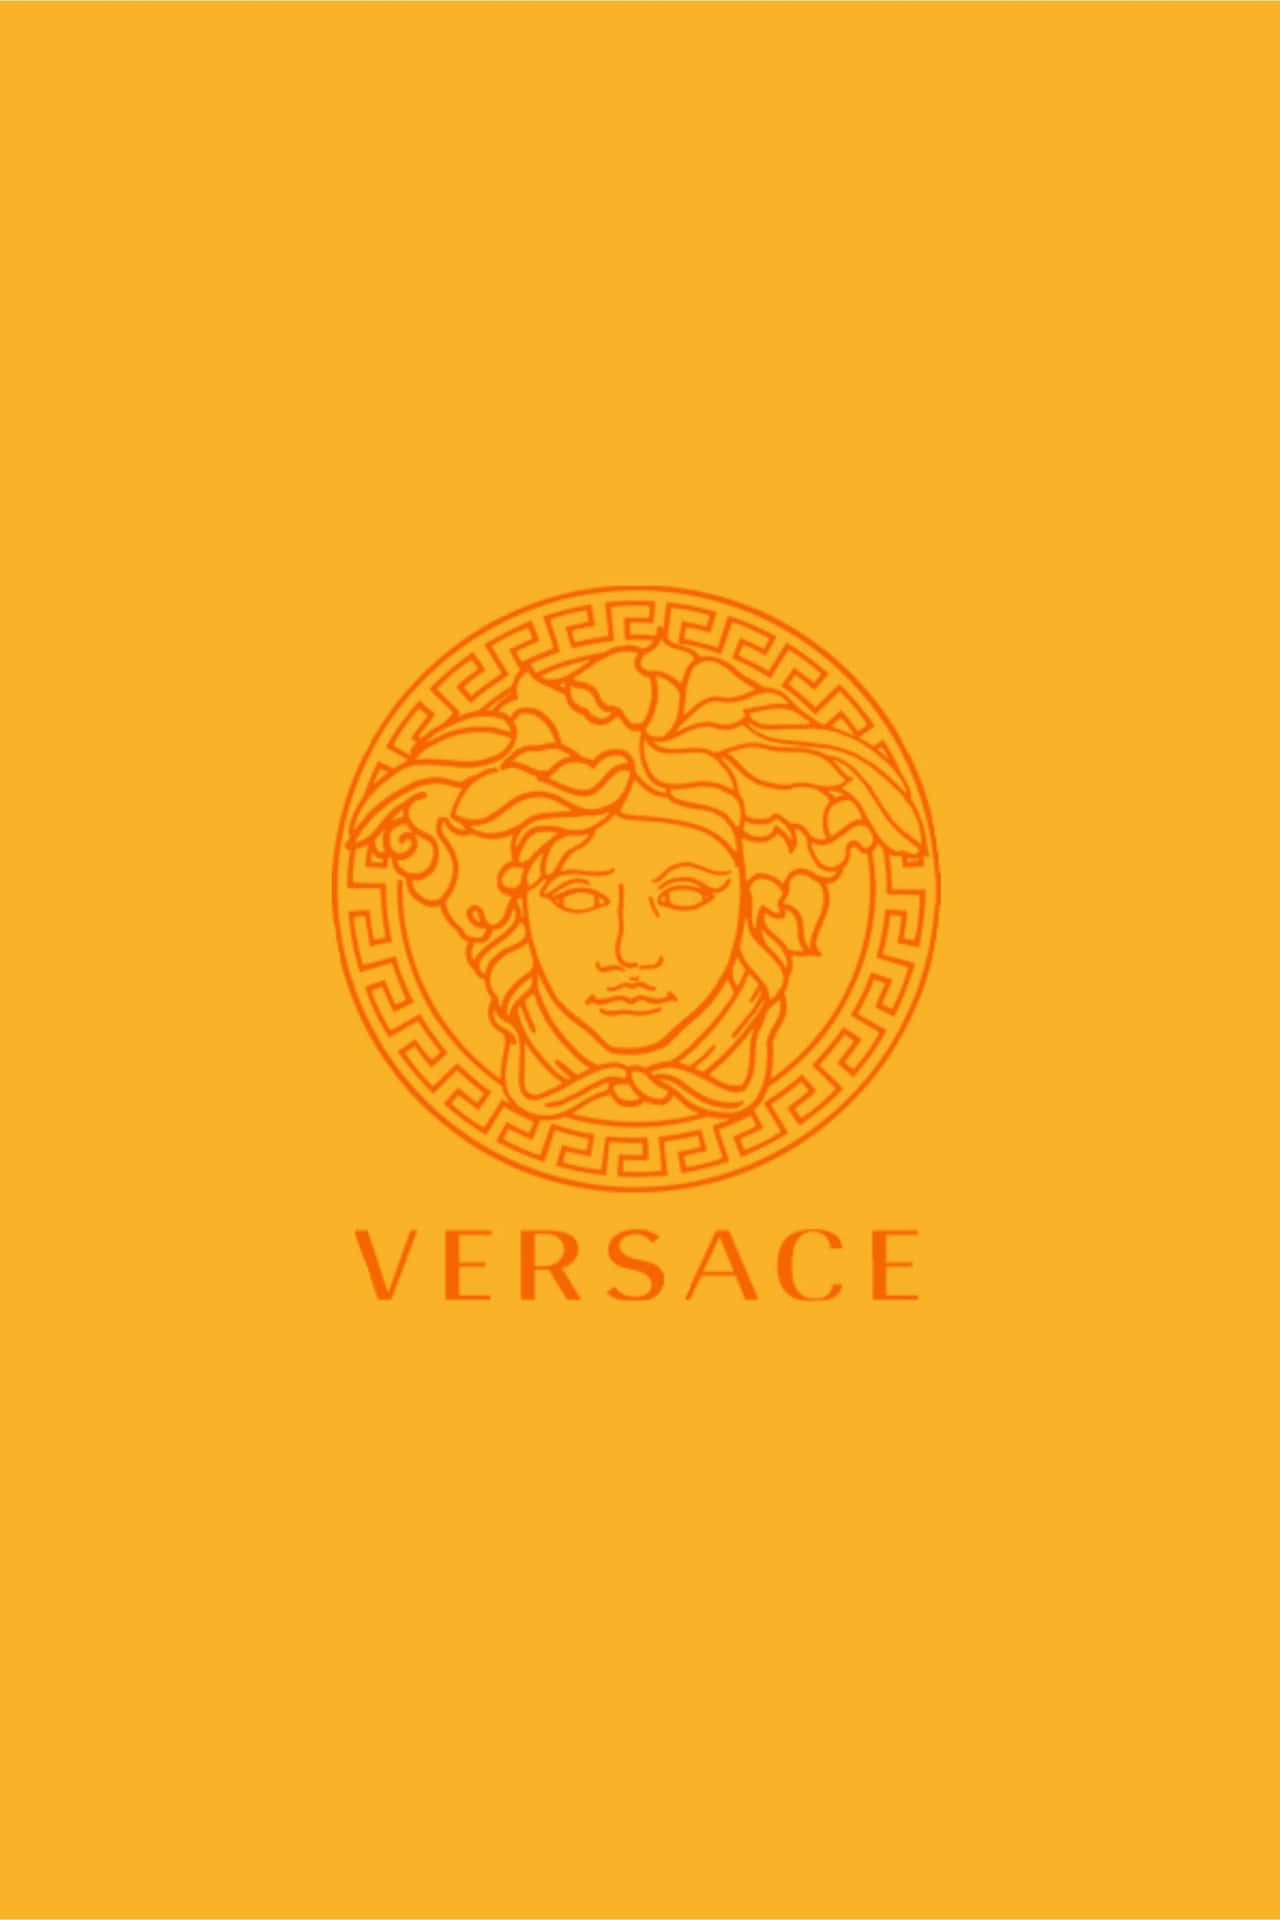 Versace 2310 X 3465 Wallpaper